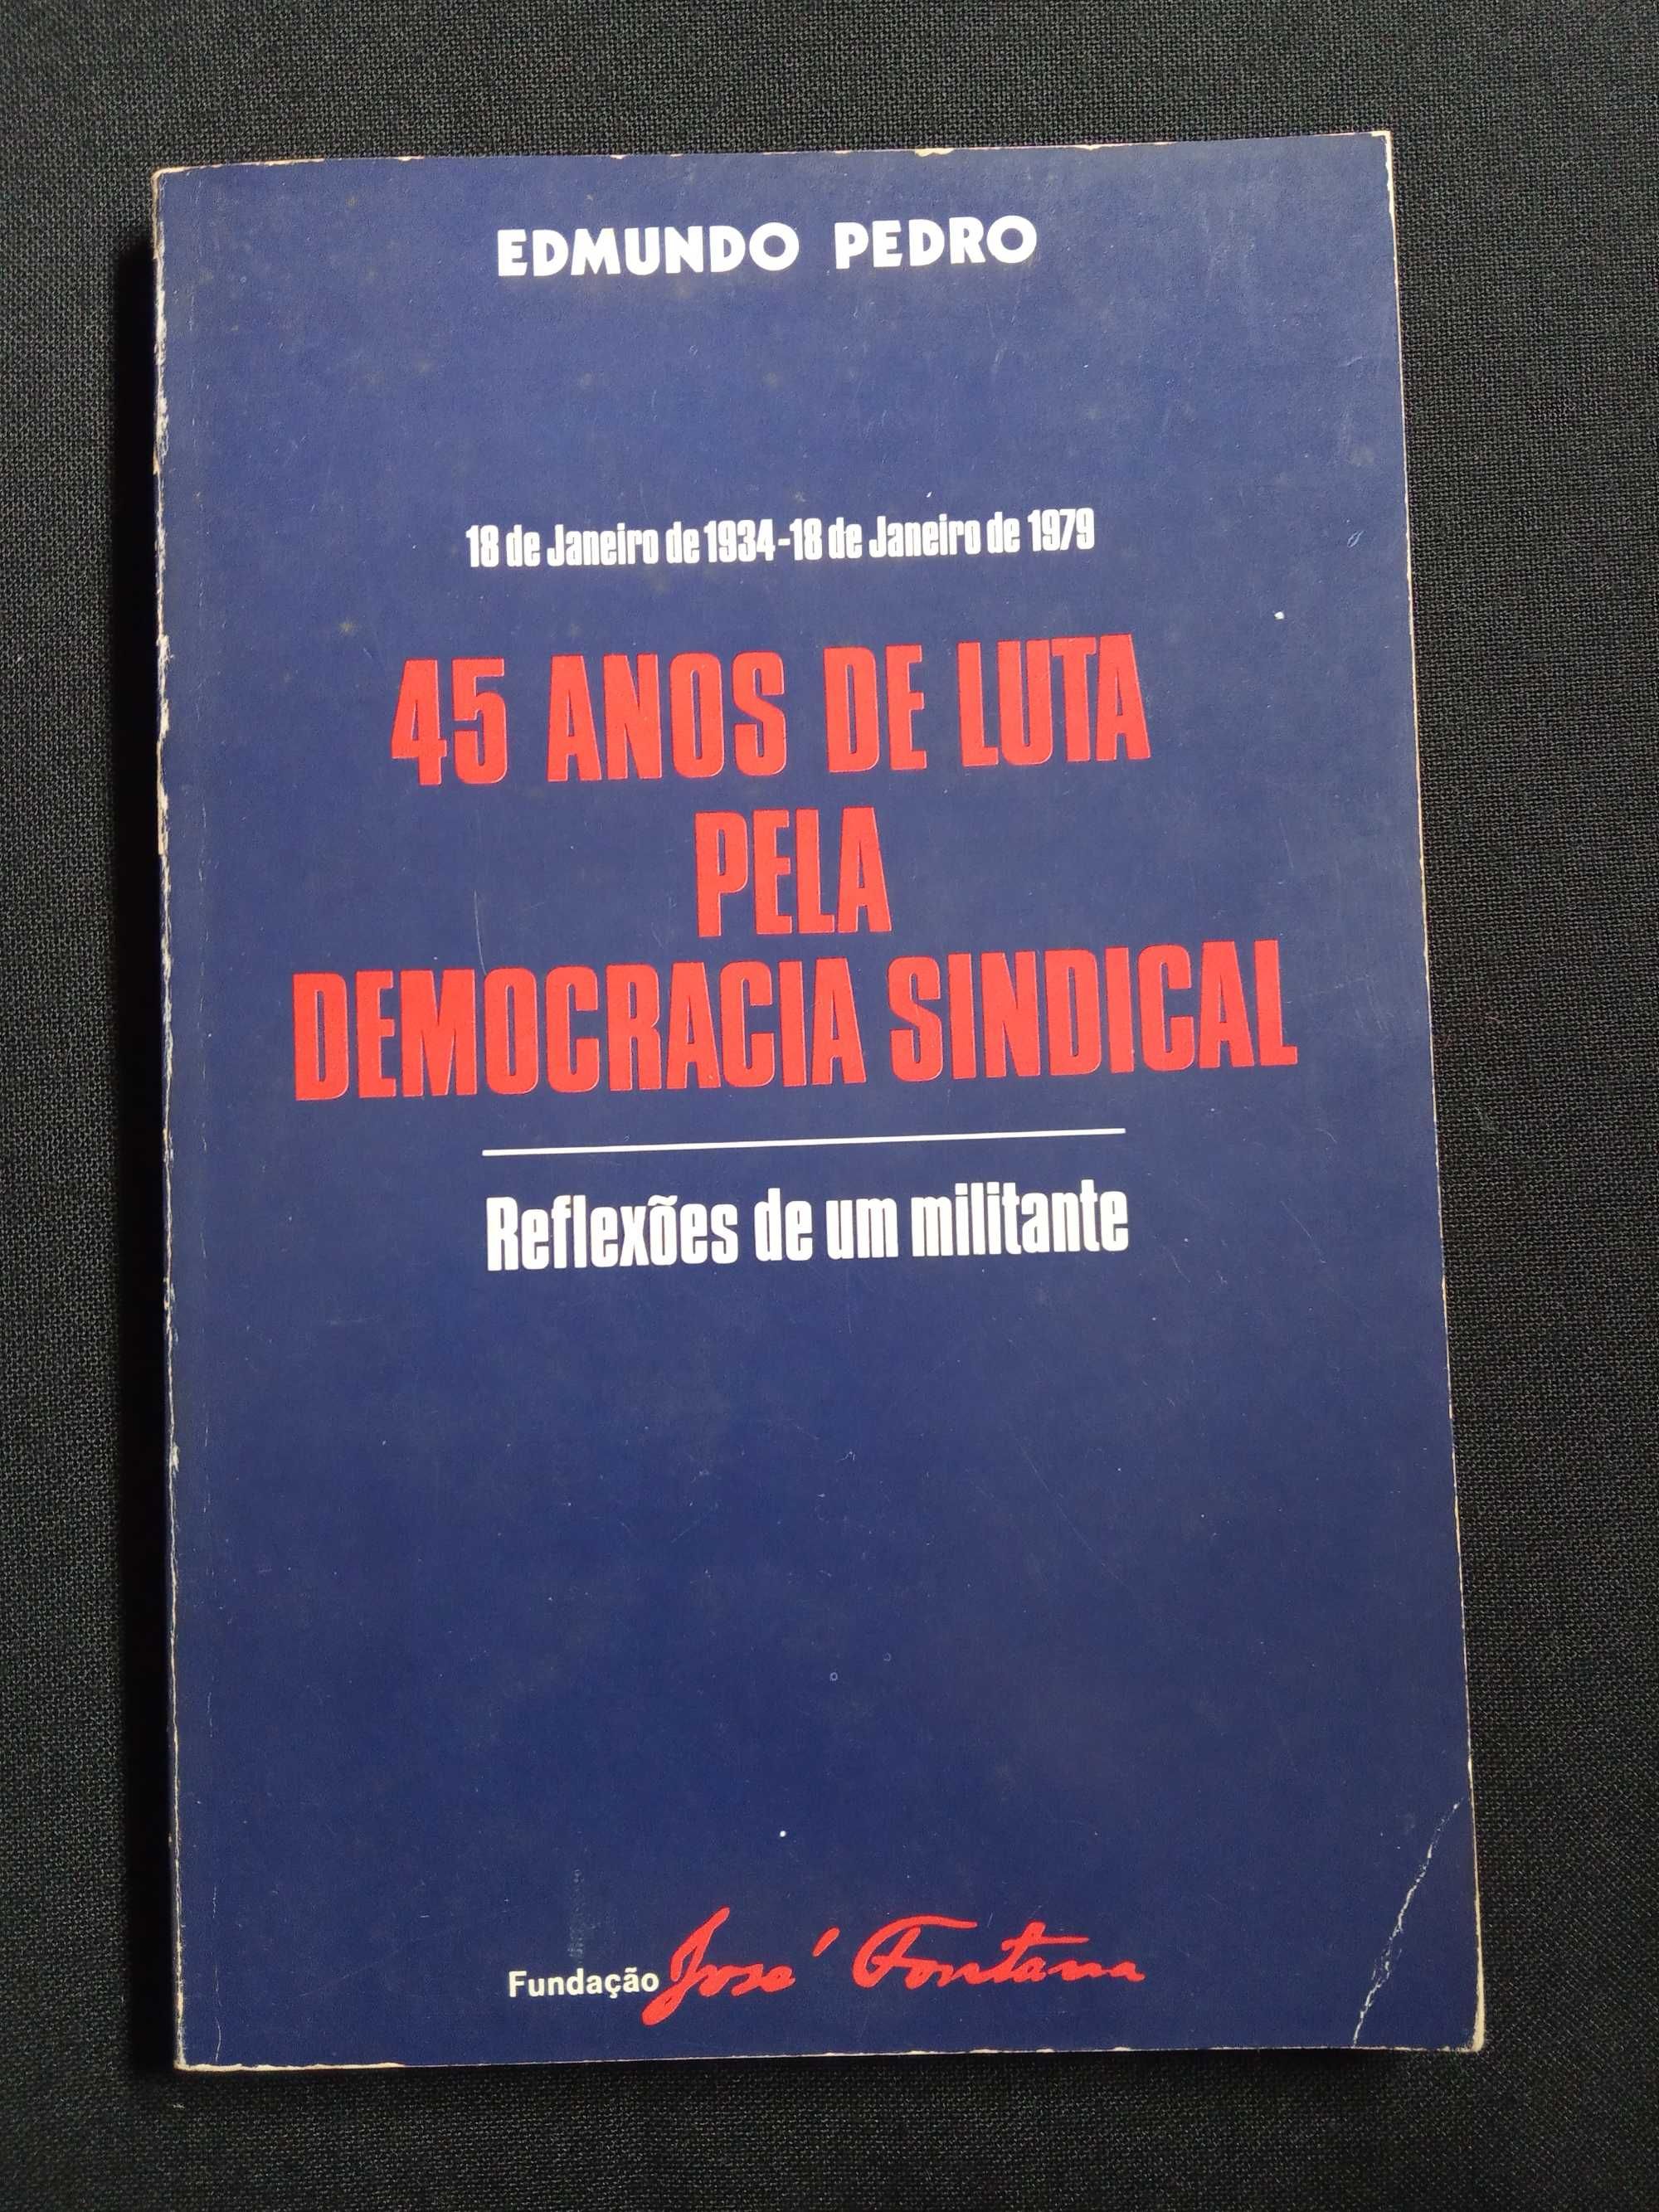 Edmundo Pedro - 45 Anos de Luta pela Democracia Sindical